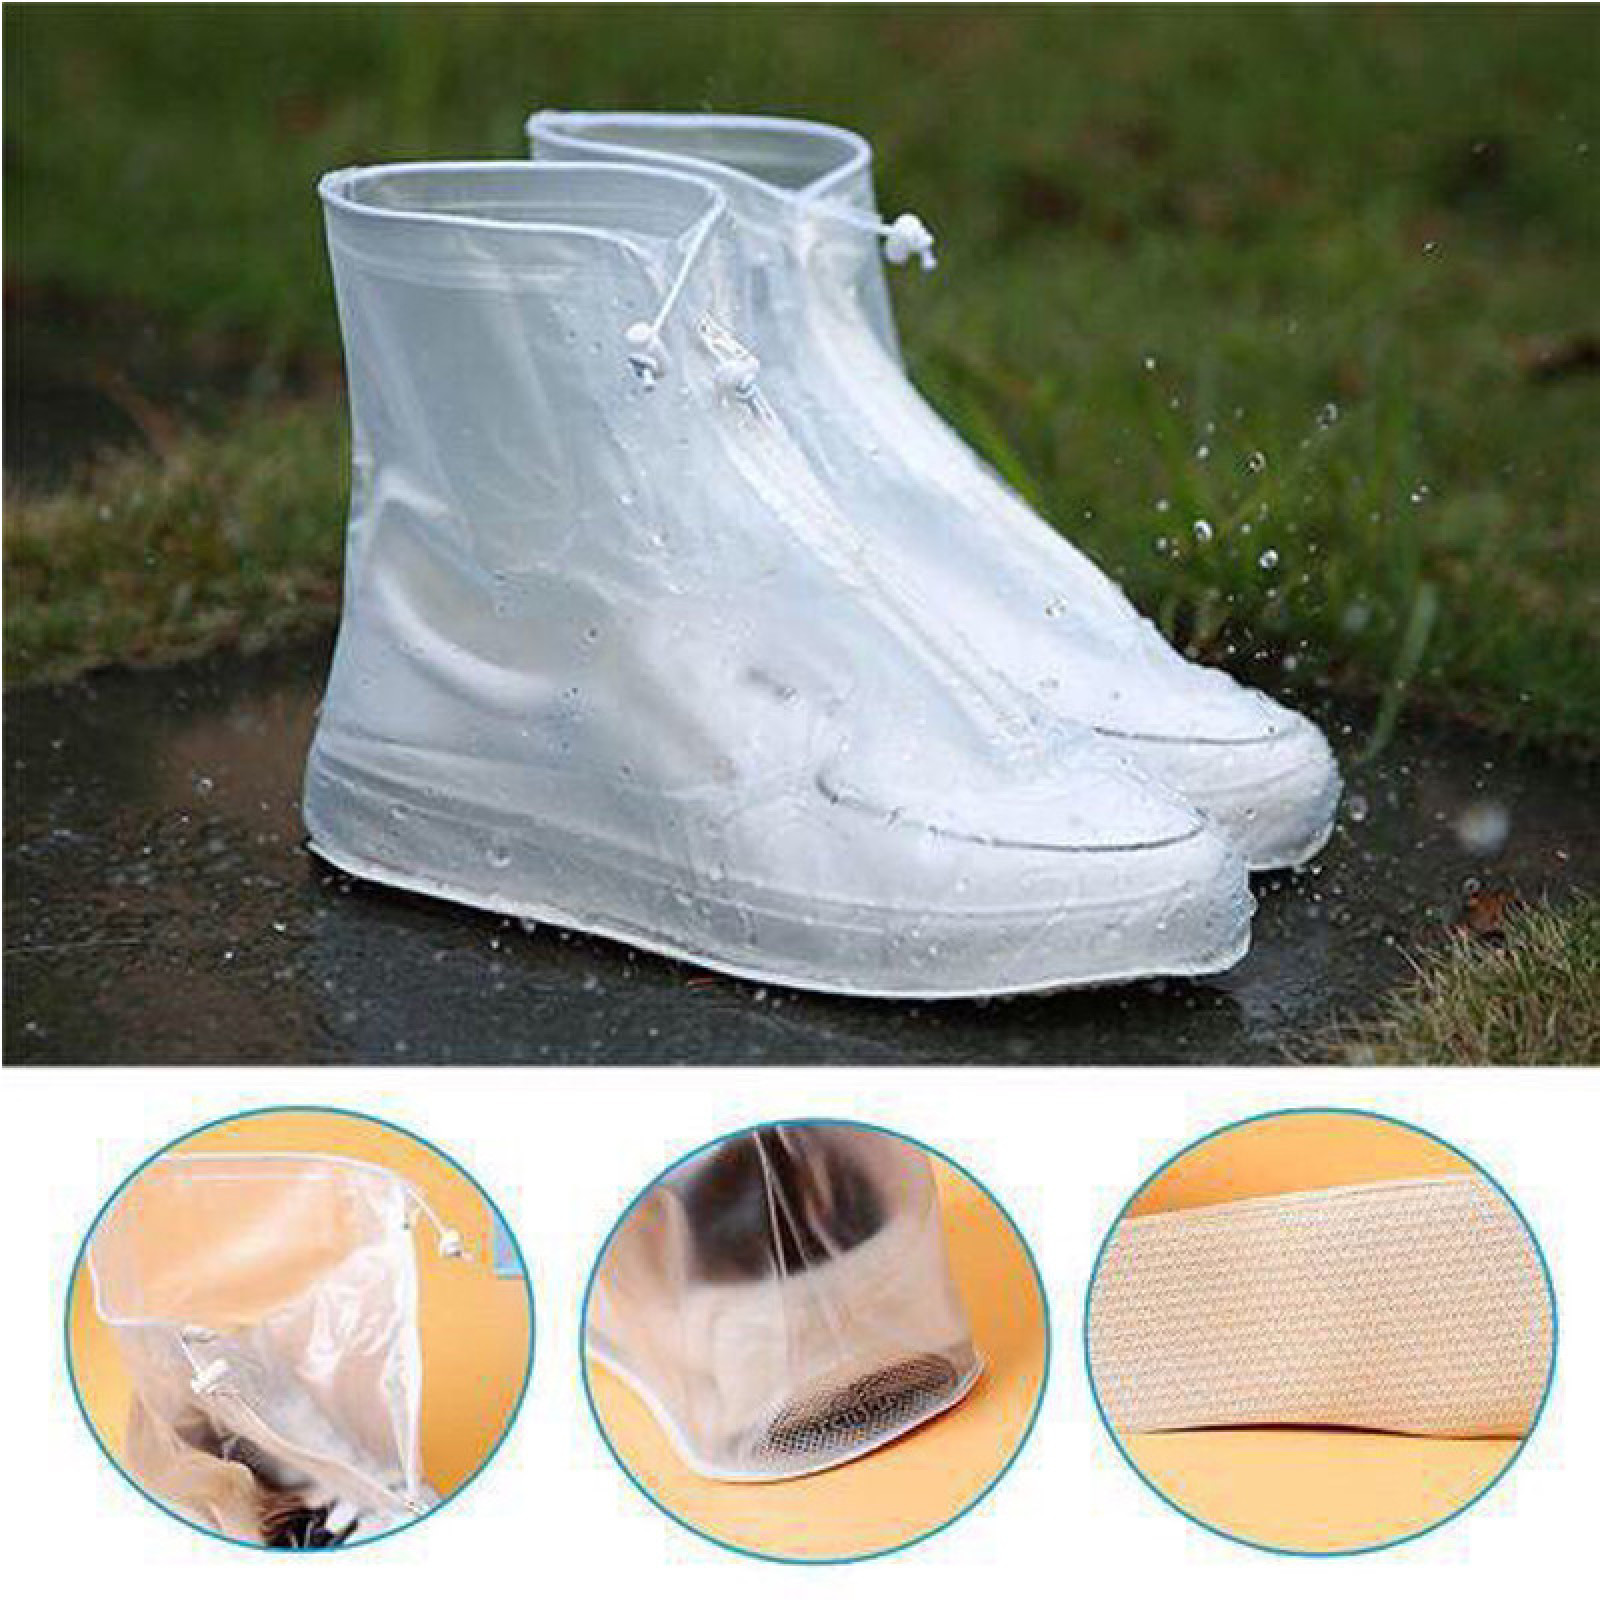 Дождевики для обуви, бахилы от дождя, чехлы для обуви Белые Размер XL 183558